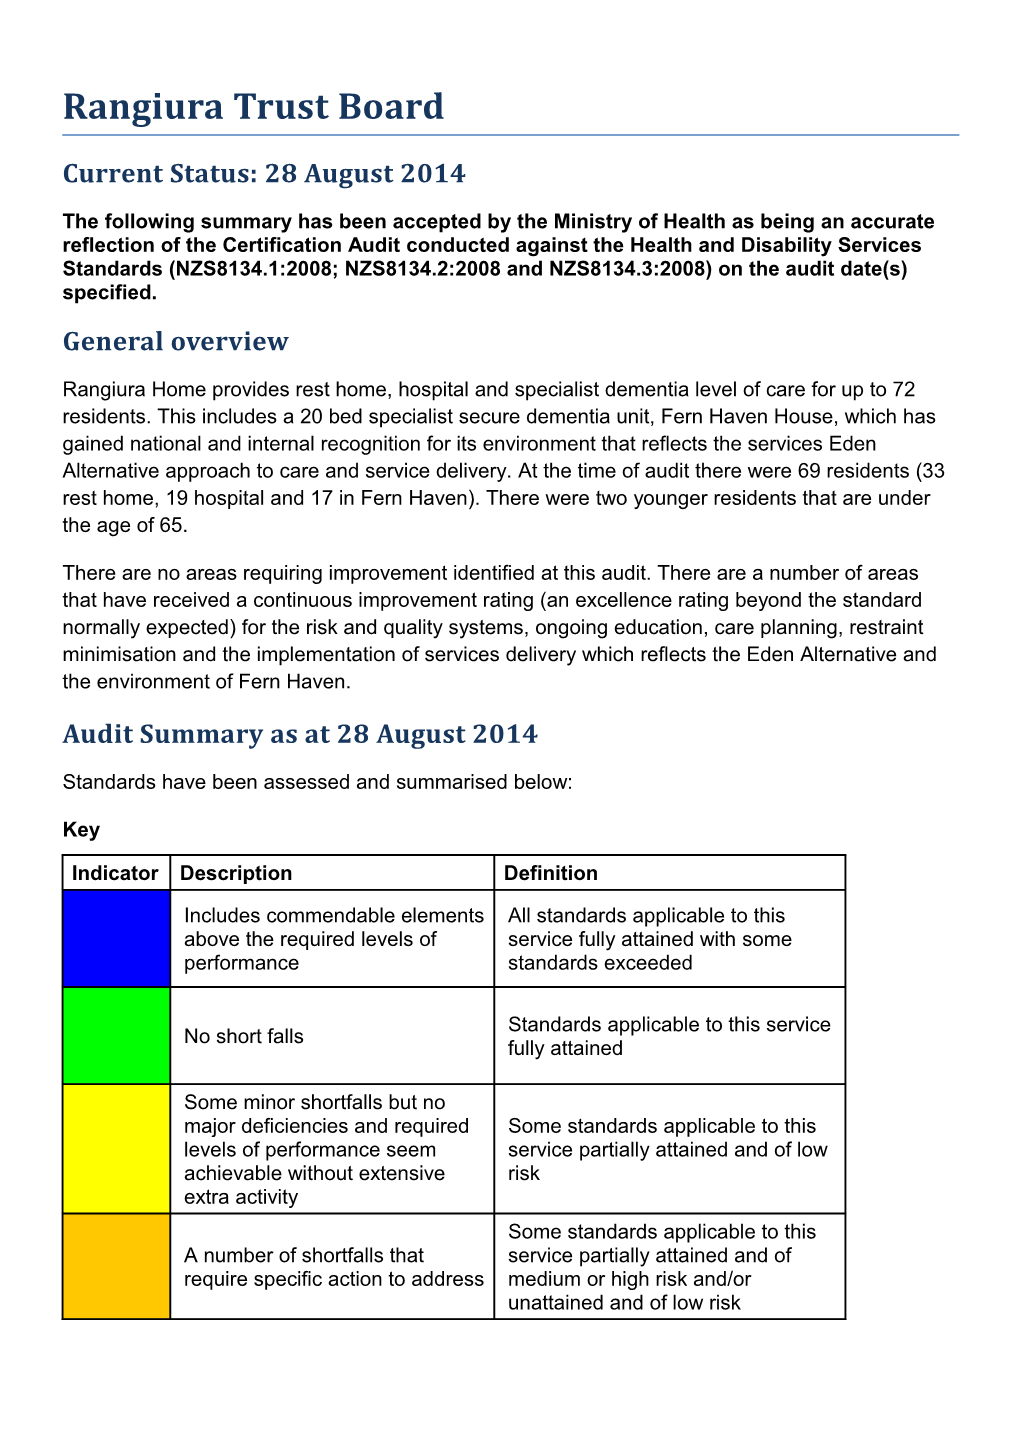 Certificaiton Audit Summary s7